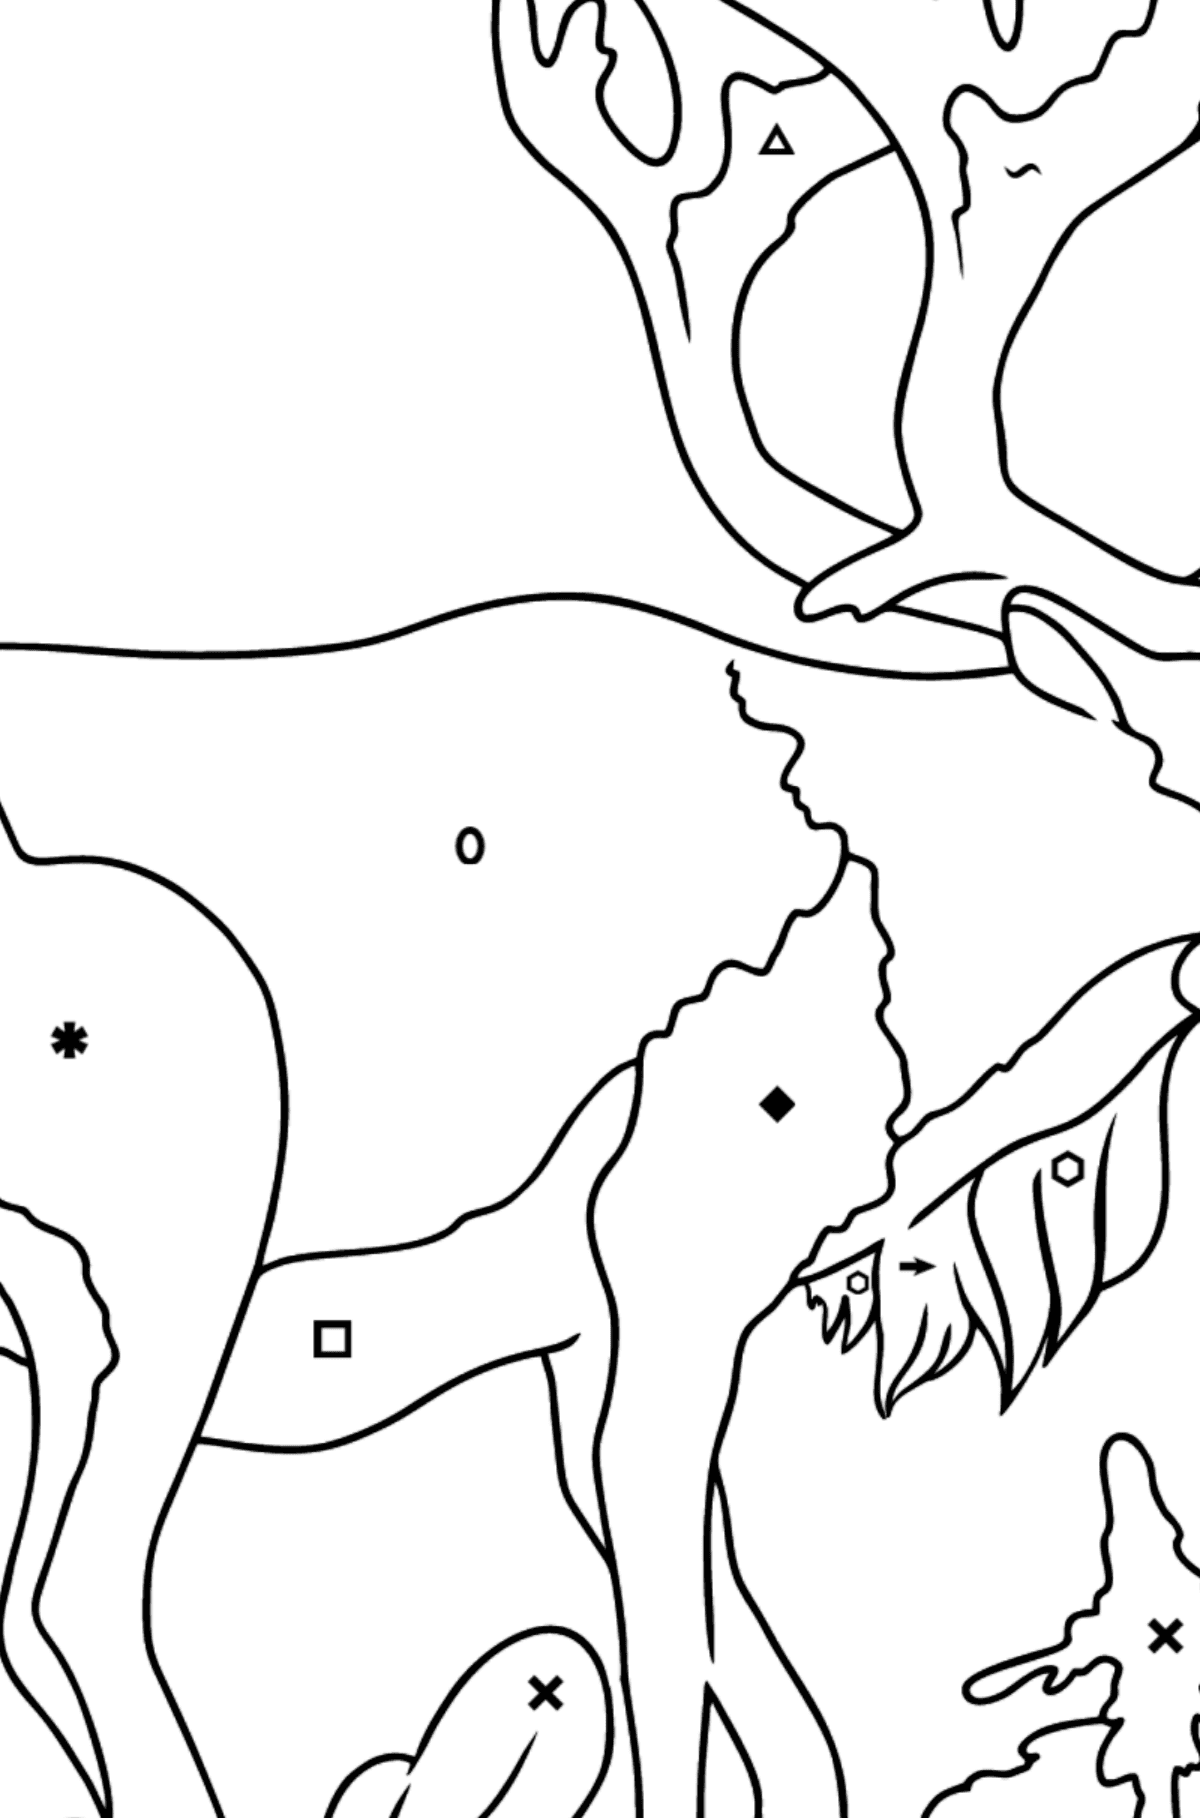 Tegning til farvning hjorte til børn - farvelægning side efter symboler og geometriske former for børn